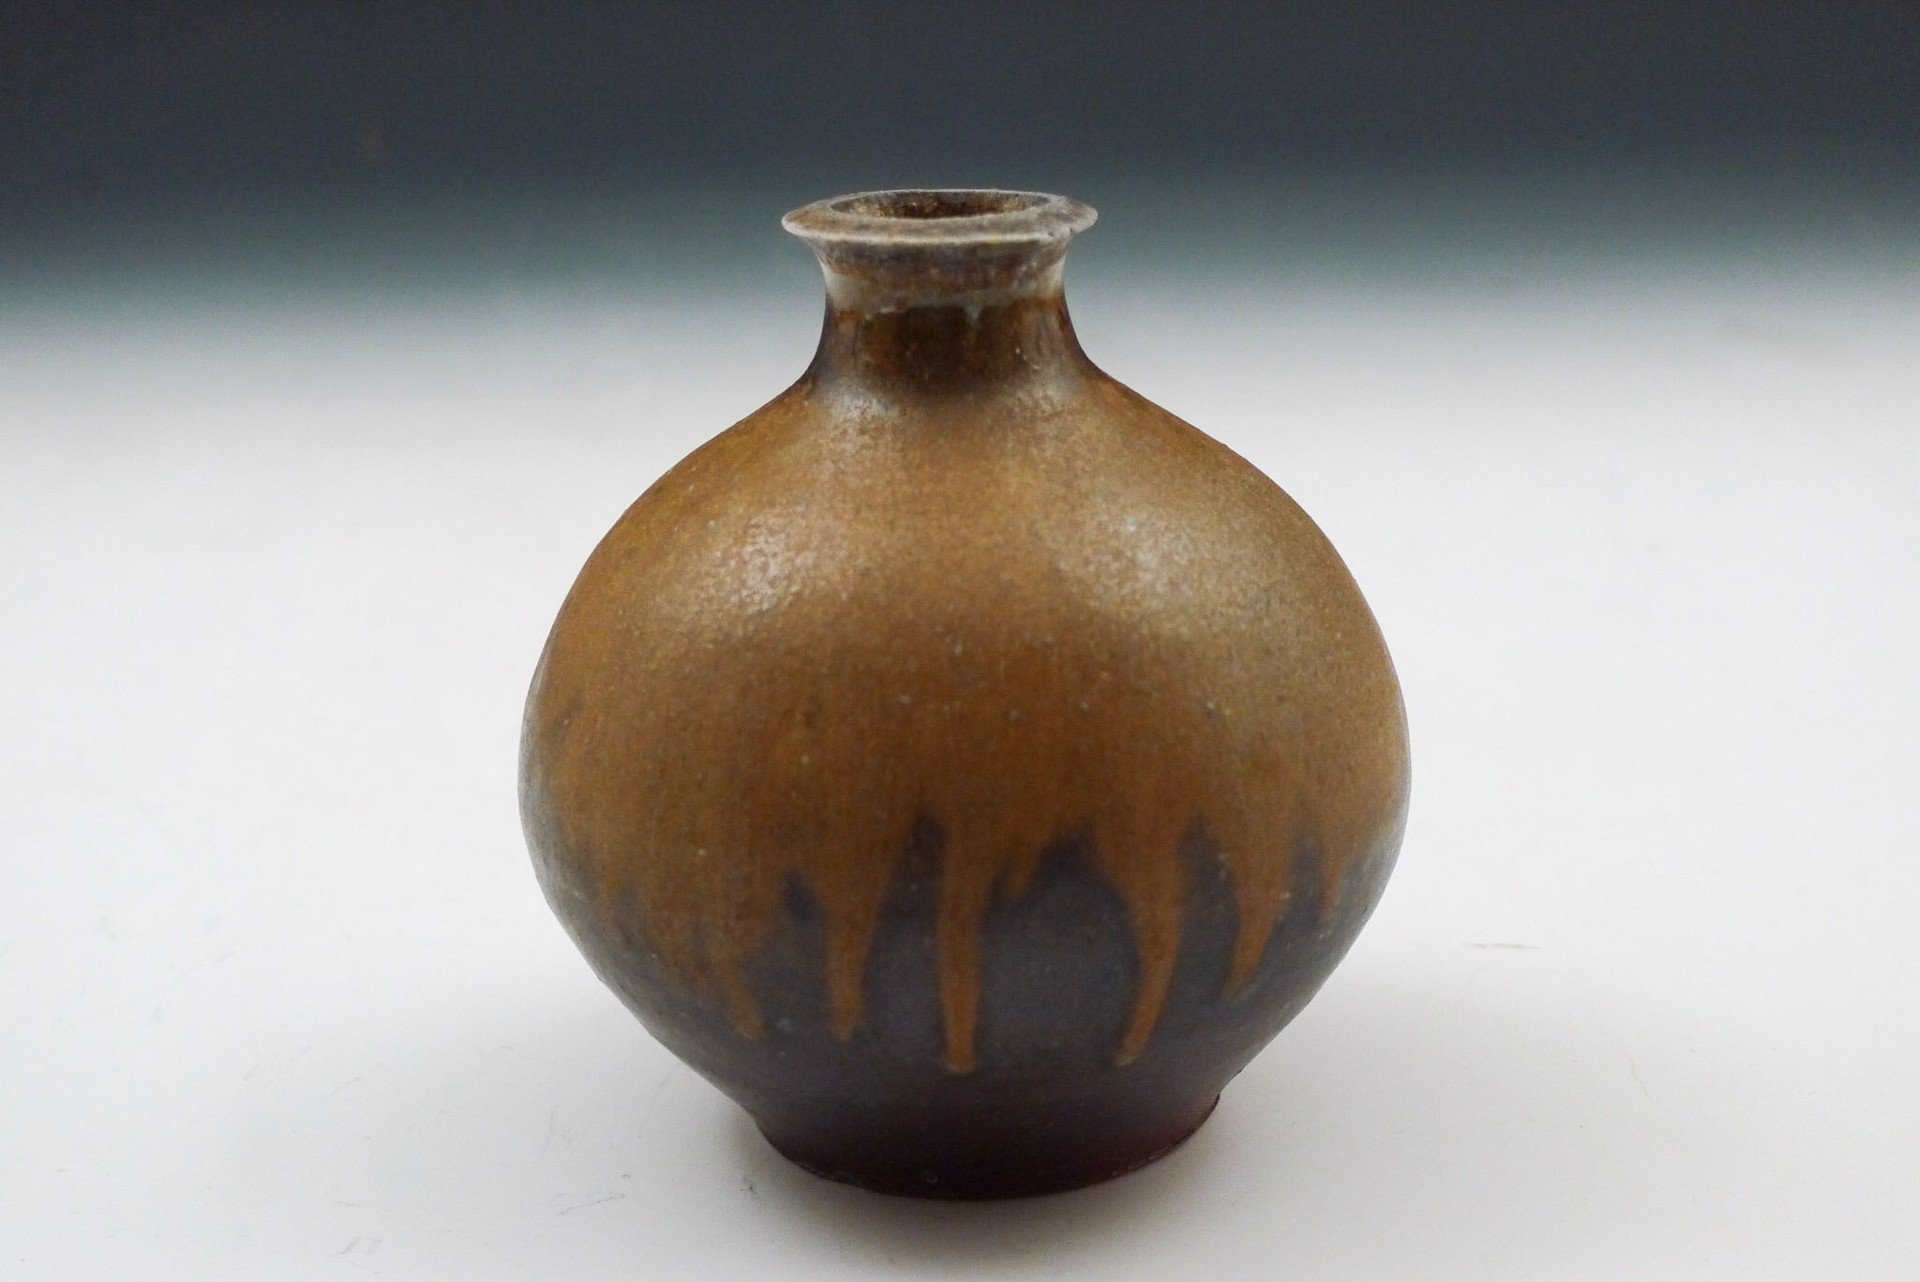 Vase by Shumpei Yamaki